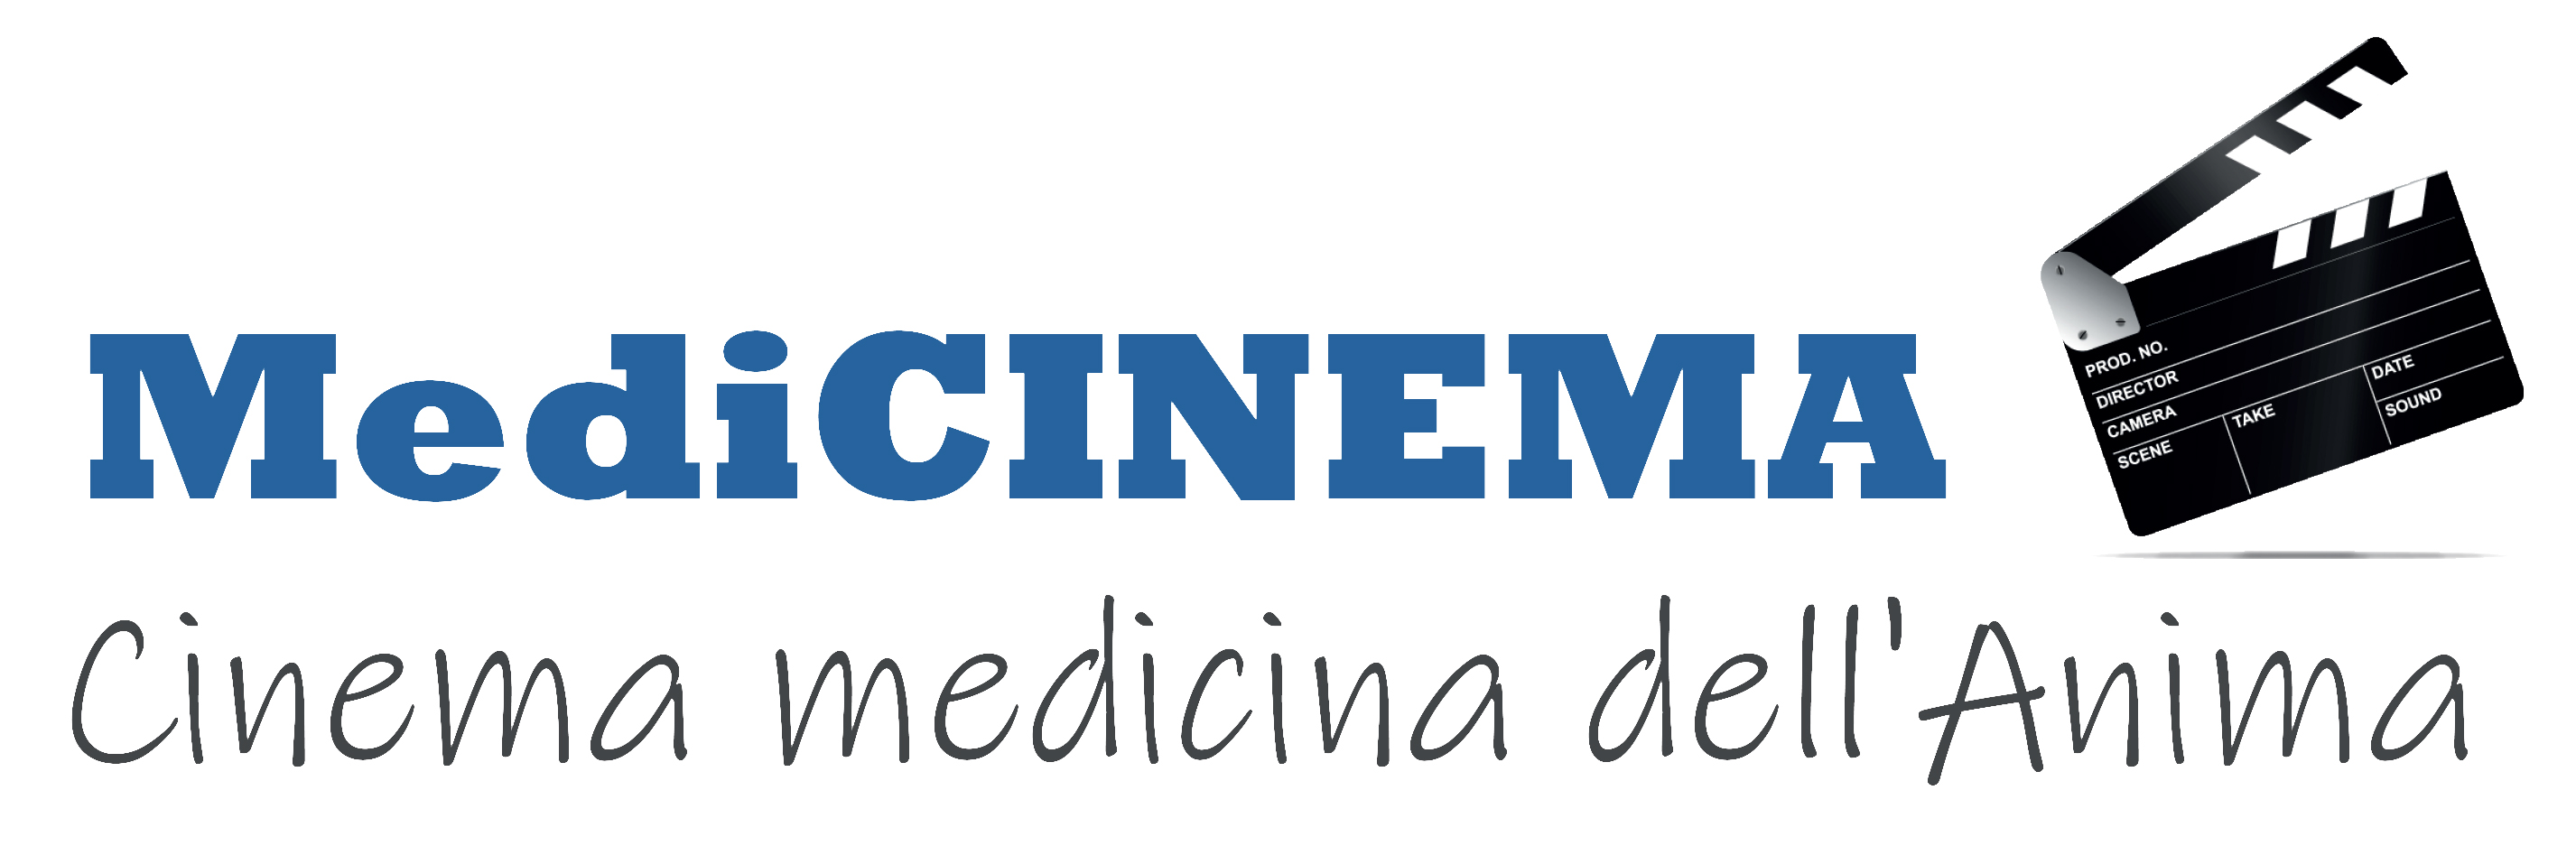 Medicinema 2020:le giornate internazionali del film  religioso a Todi dal 6 al 27 agosto